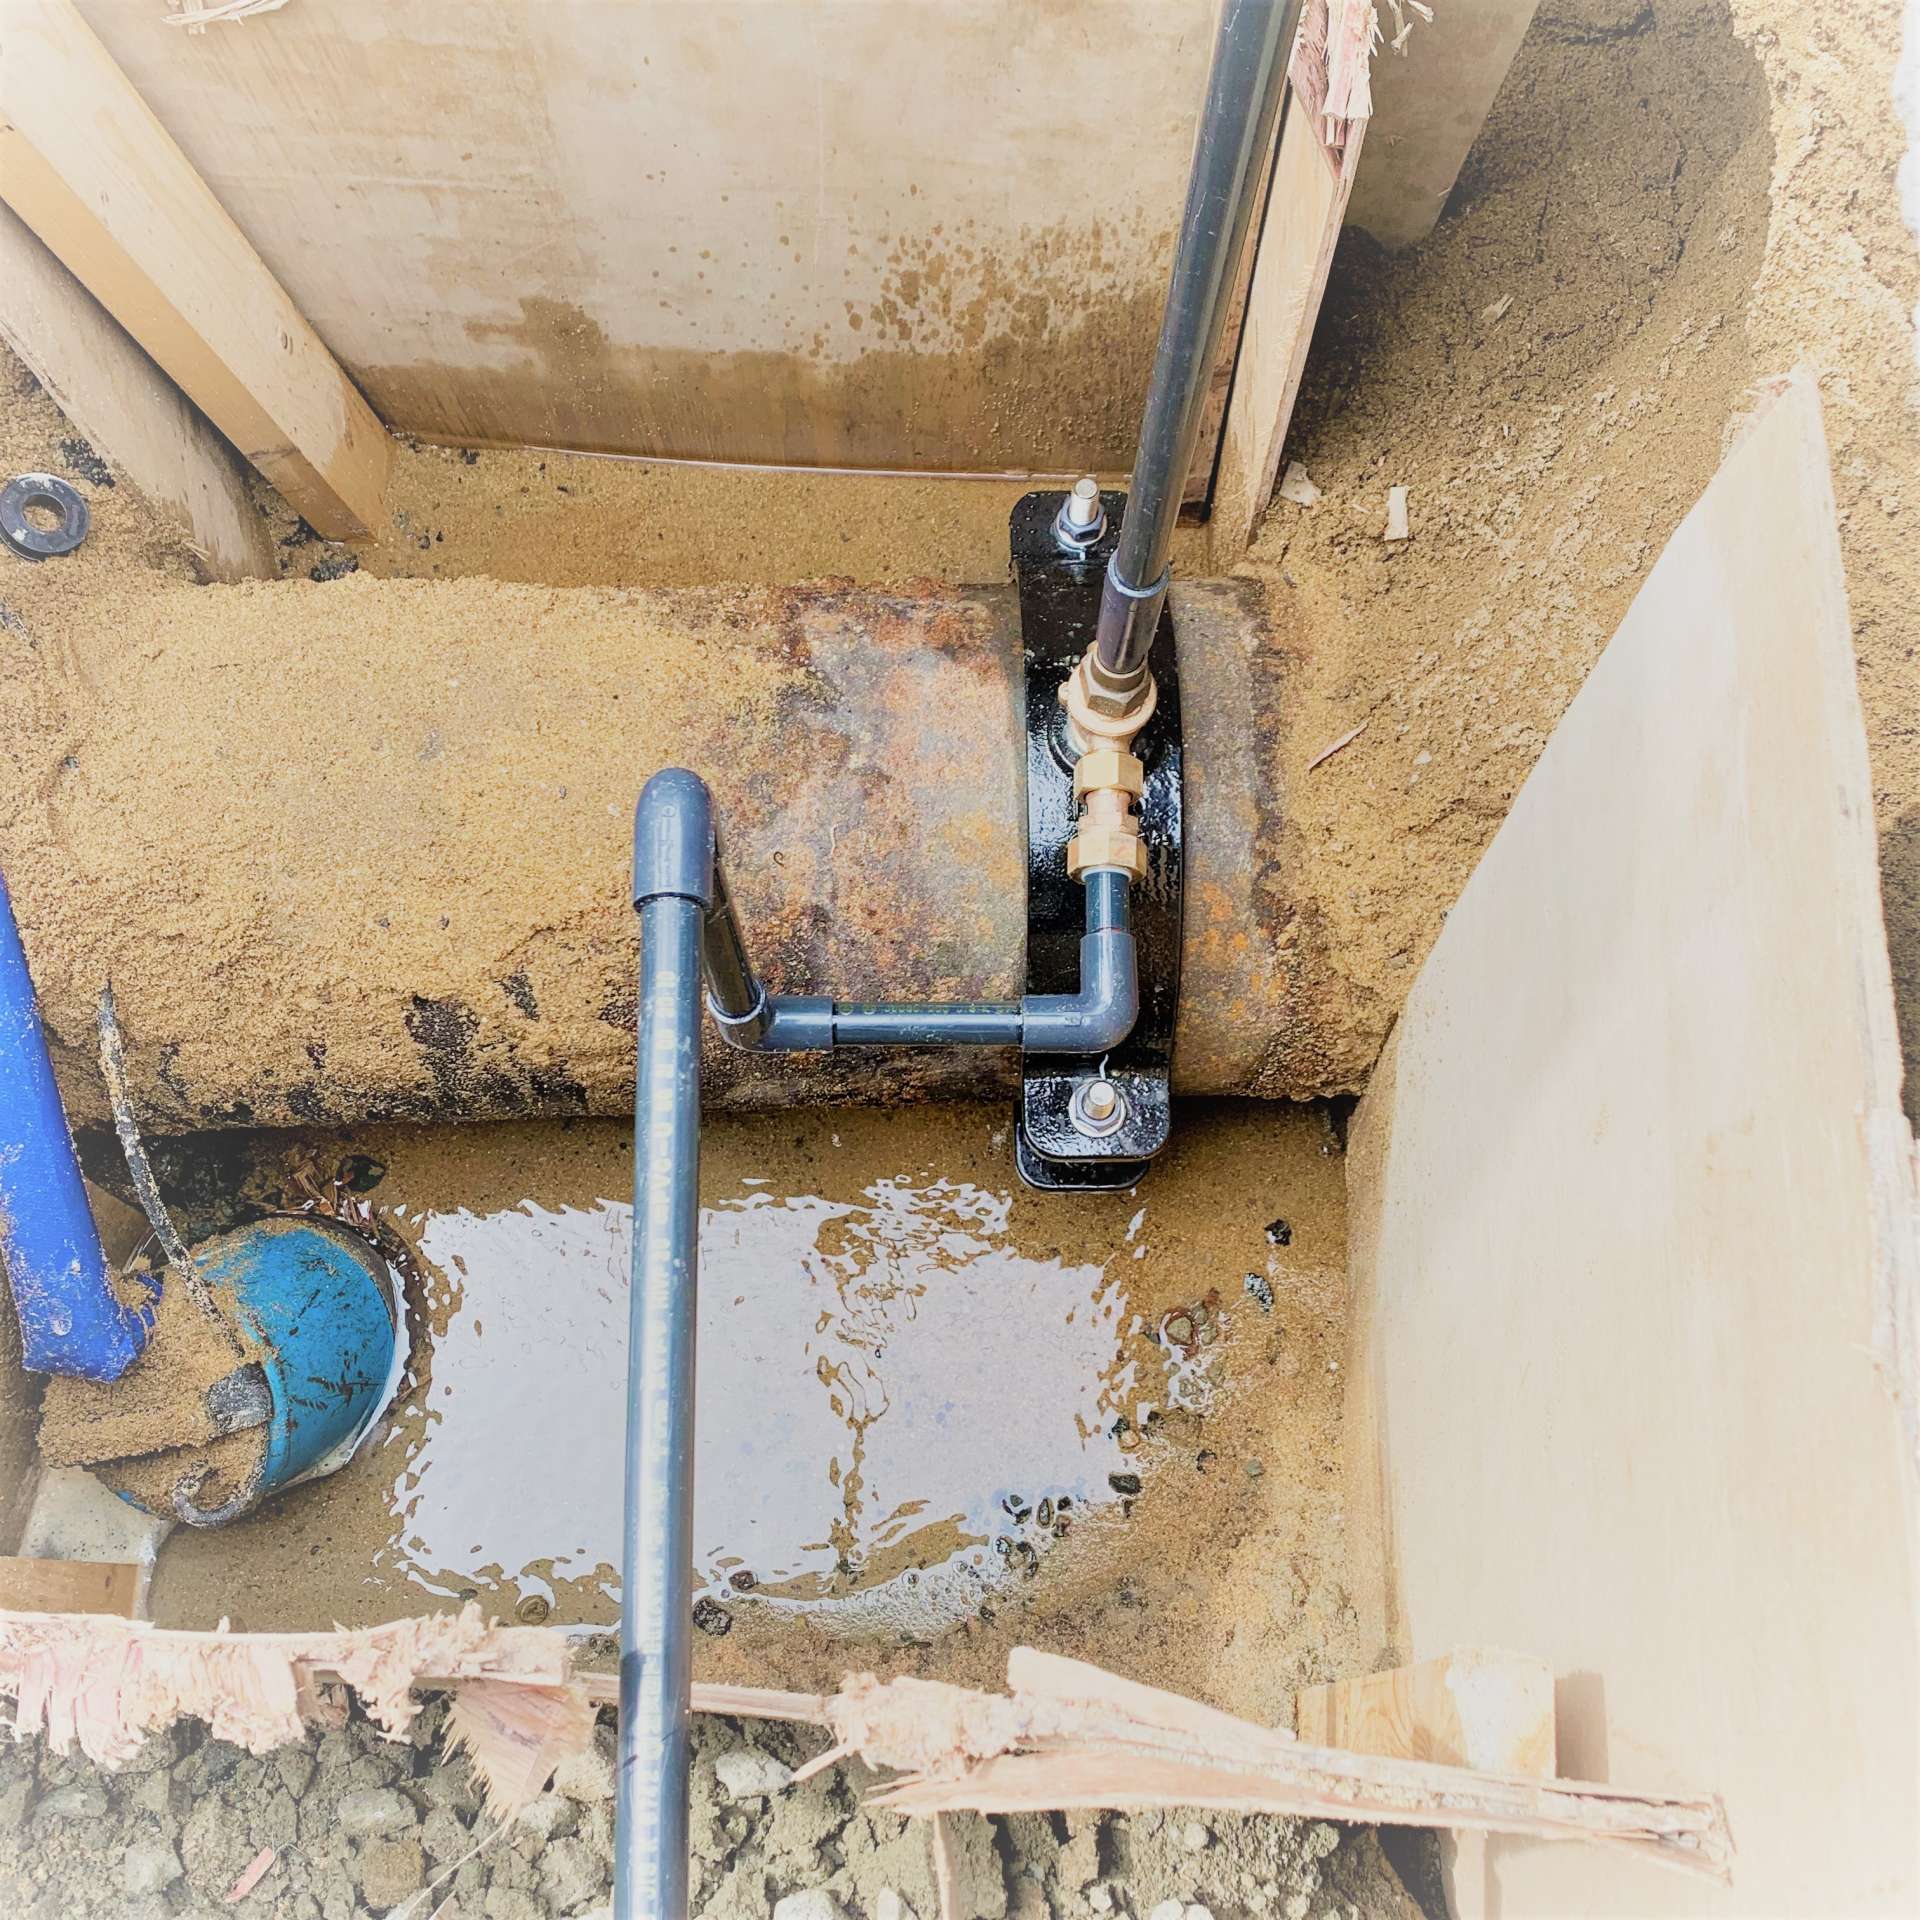 【施工中】水道本管に分岐水栓をつけて、敷地に水道管を引込みました